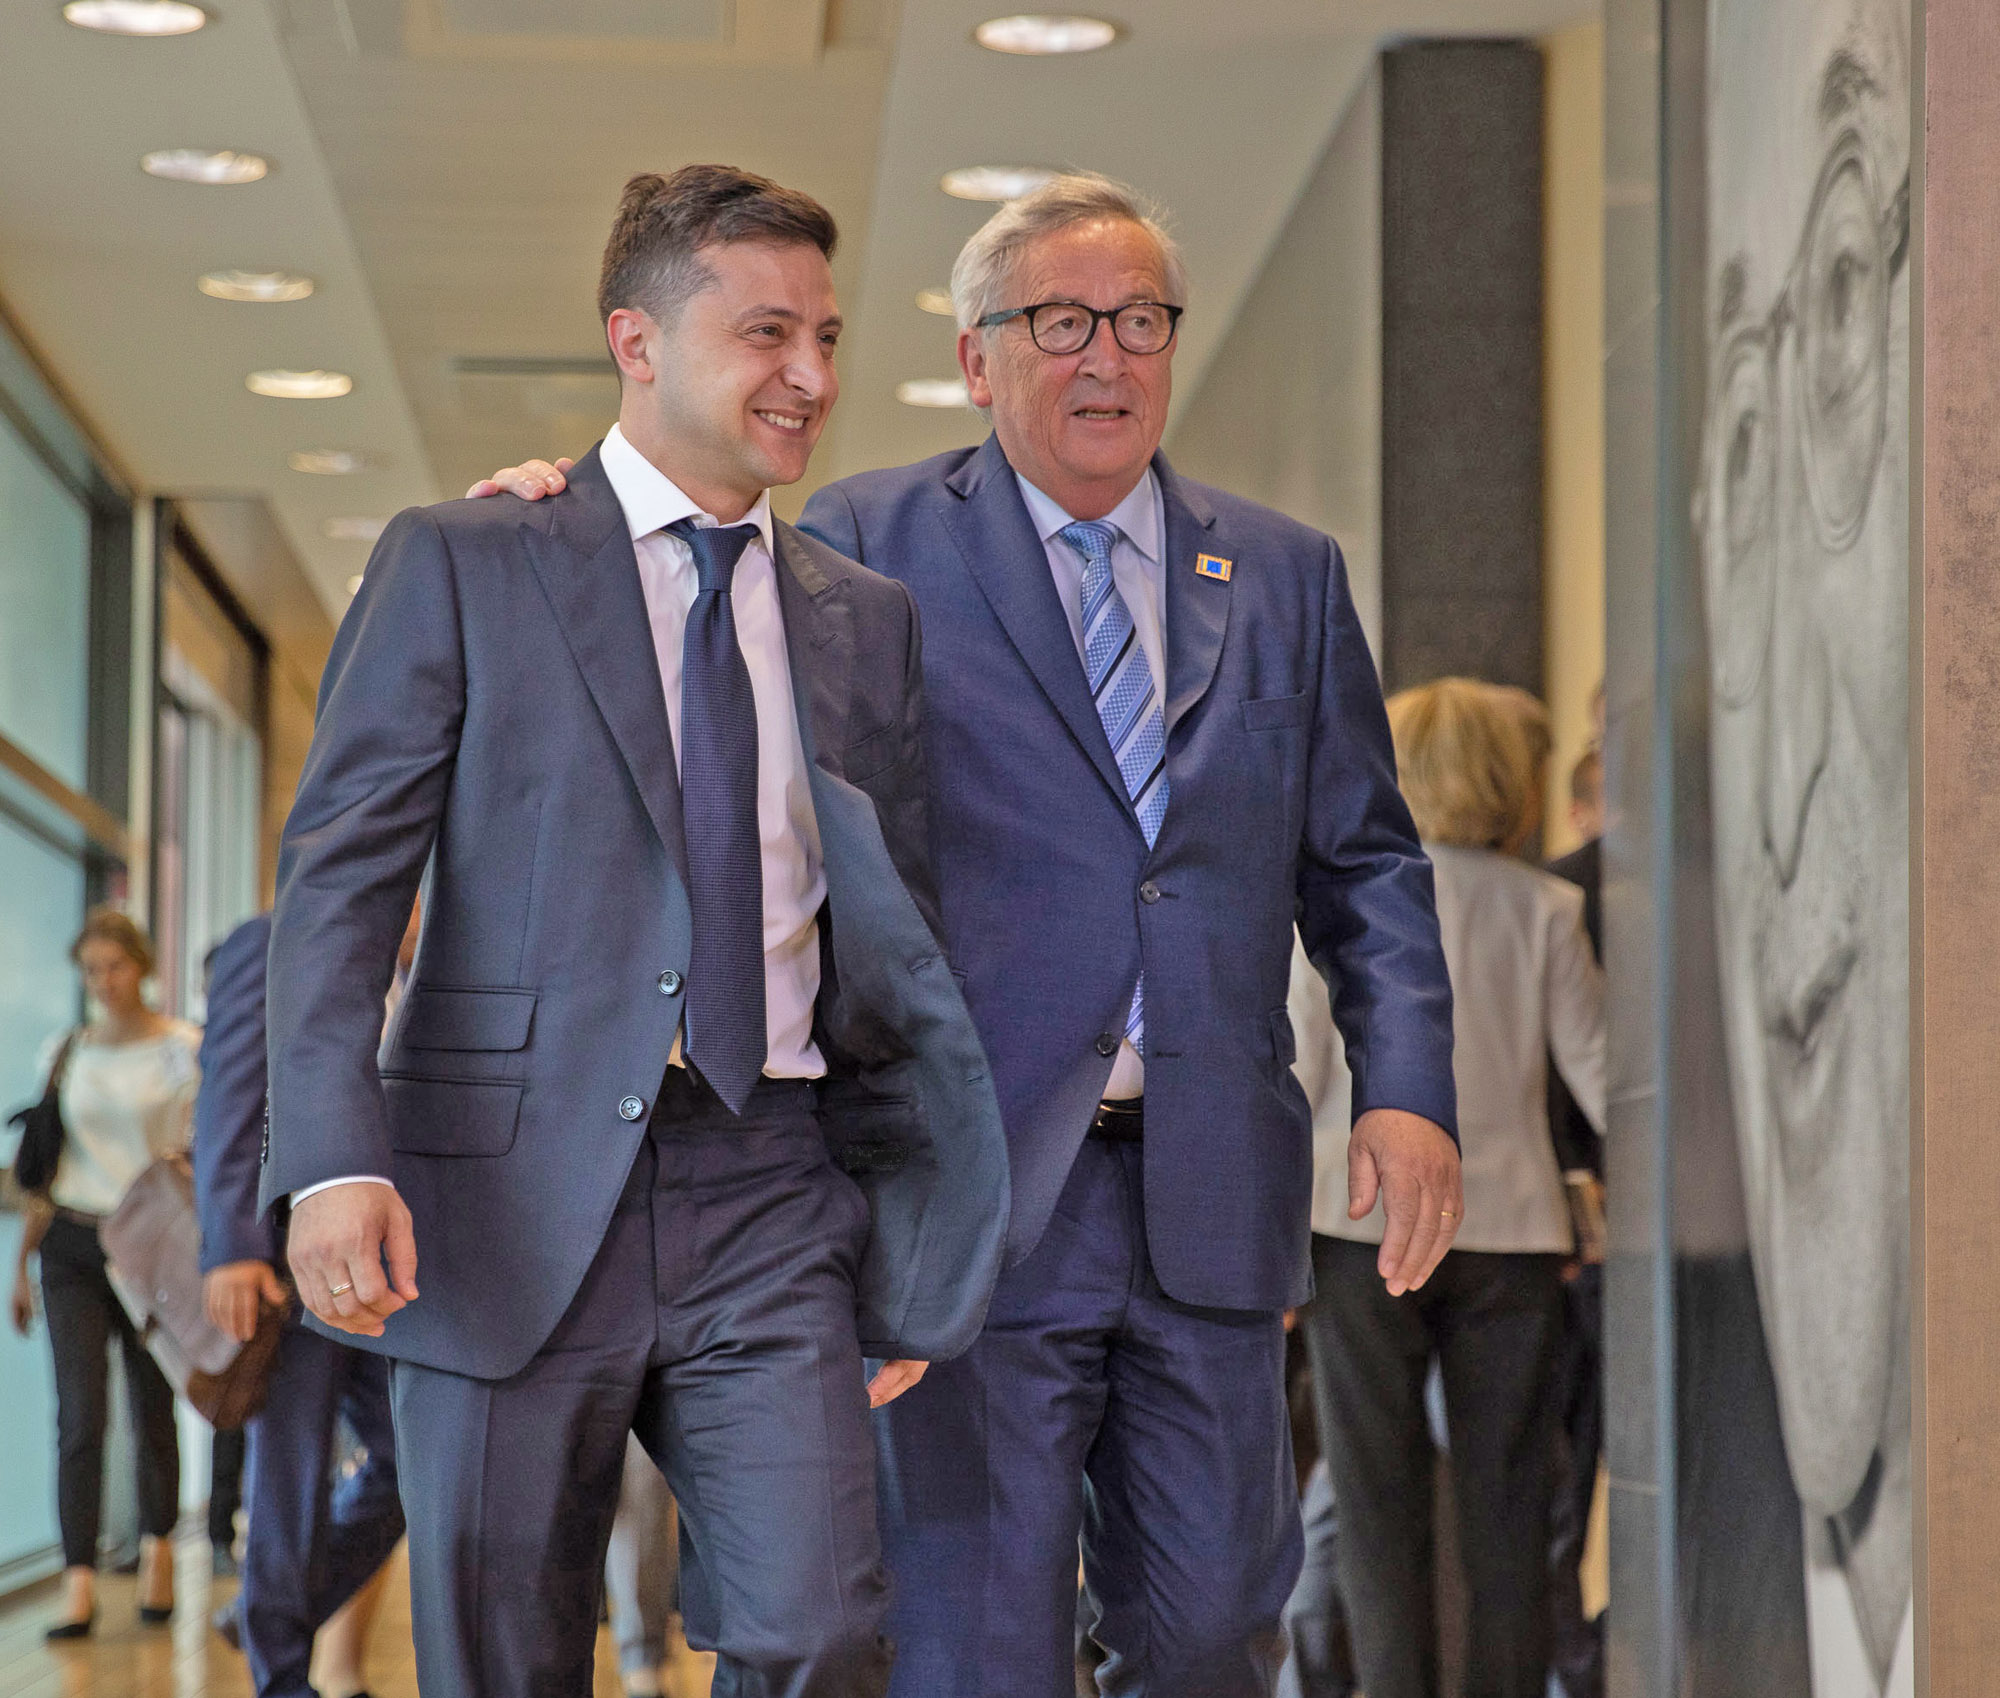 Голова Єврокомісії Жан-Клод Юнкер одразу проникся симпатією до Володимира Зеленського, назвавши його своїм новим другом. Фото з сайту president.gov.ua